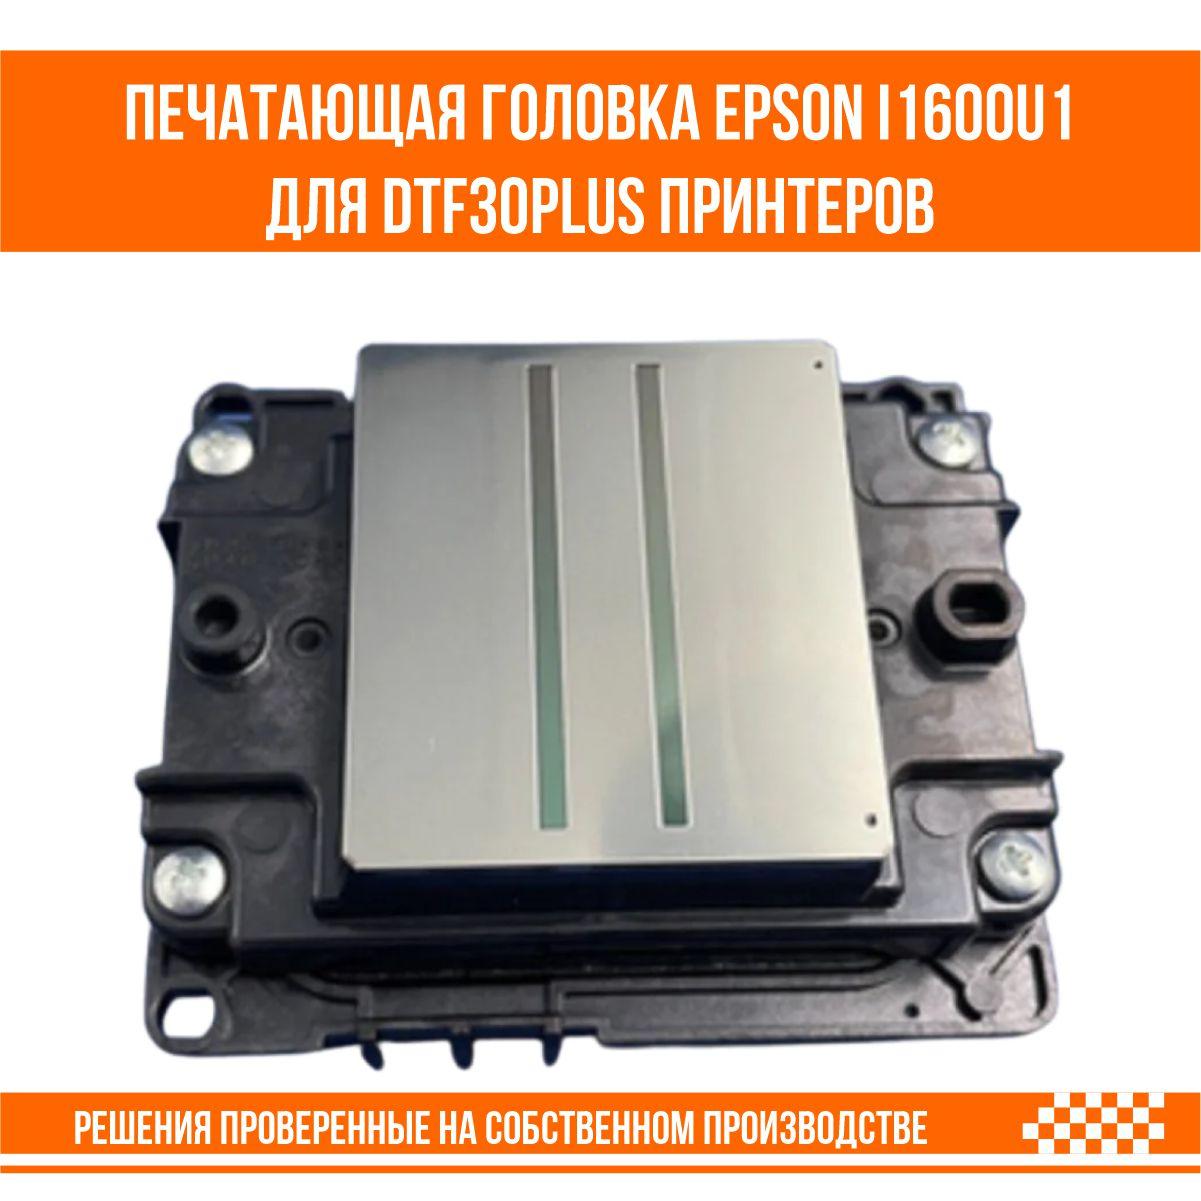 Печатающая головка Epson i1600-u1 для UV DTF 30 PLUS принтера